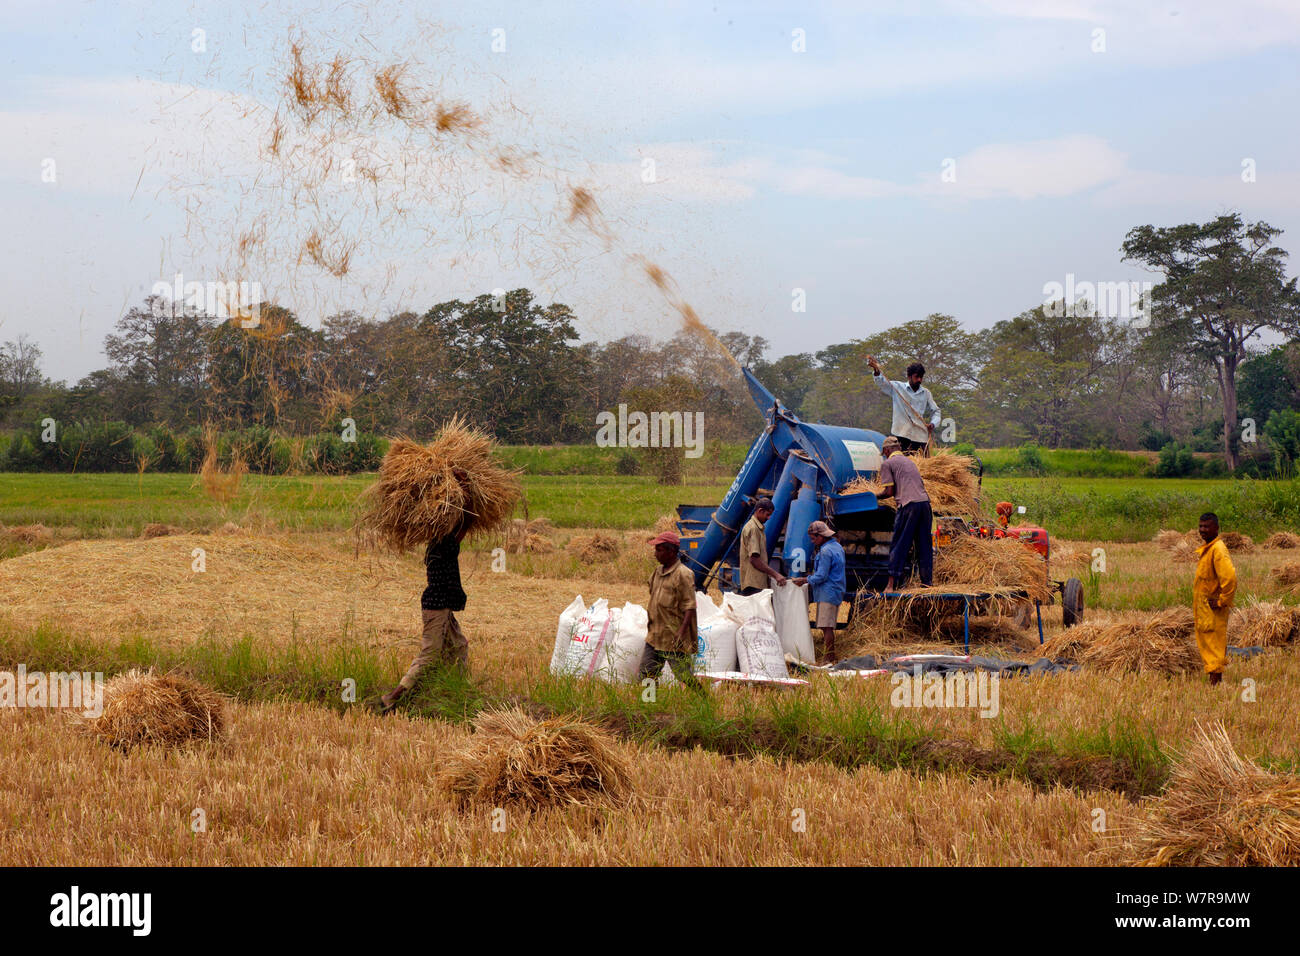 Rice harvesting in field, Sri Lanka March 2013 Stock Photo